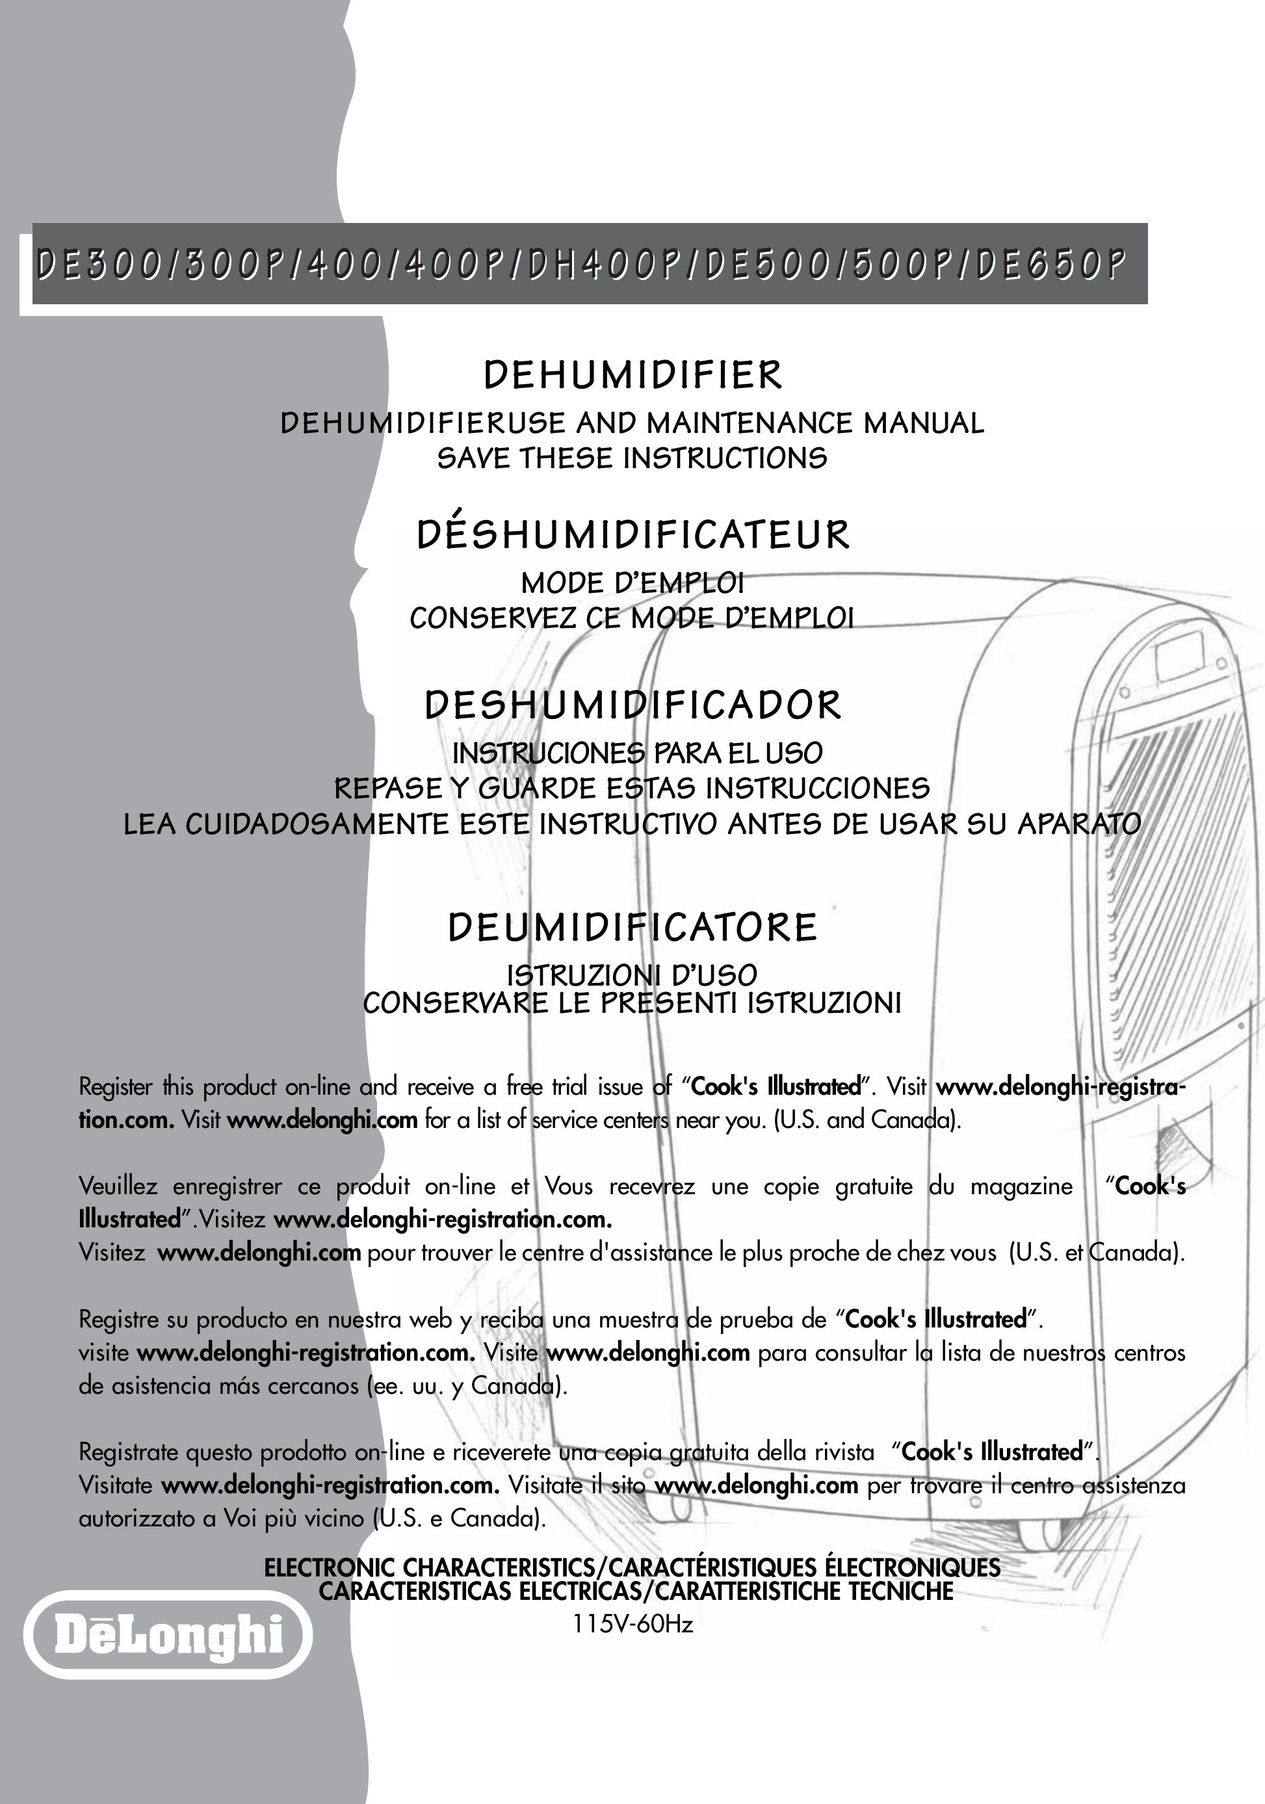 DeLonghi de 300 Dehumidifier User Manual